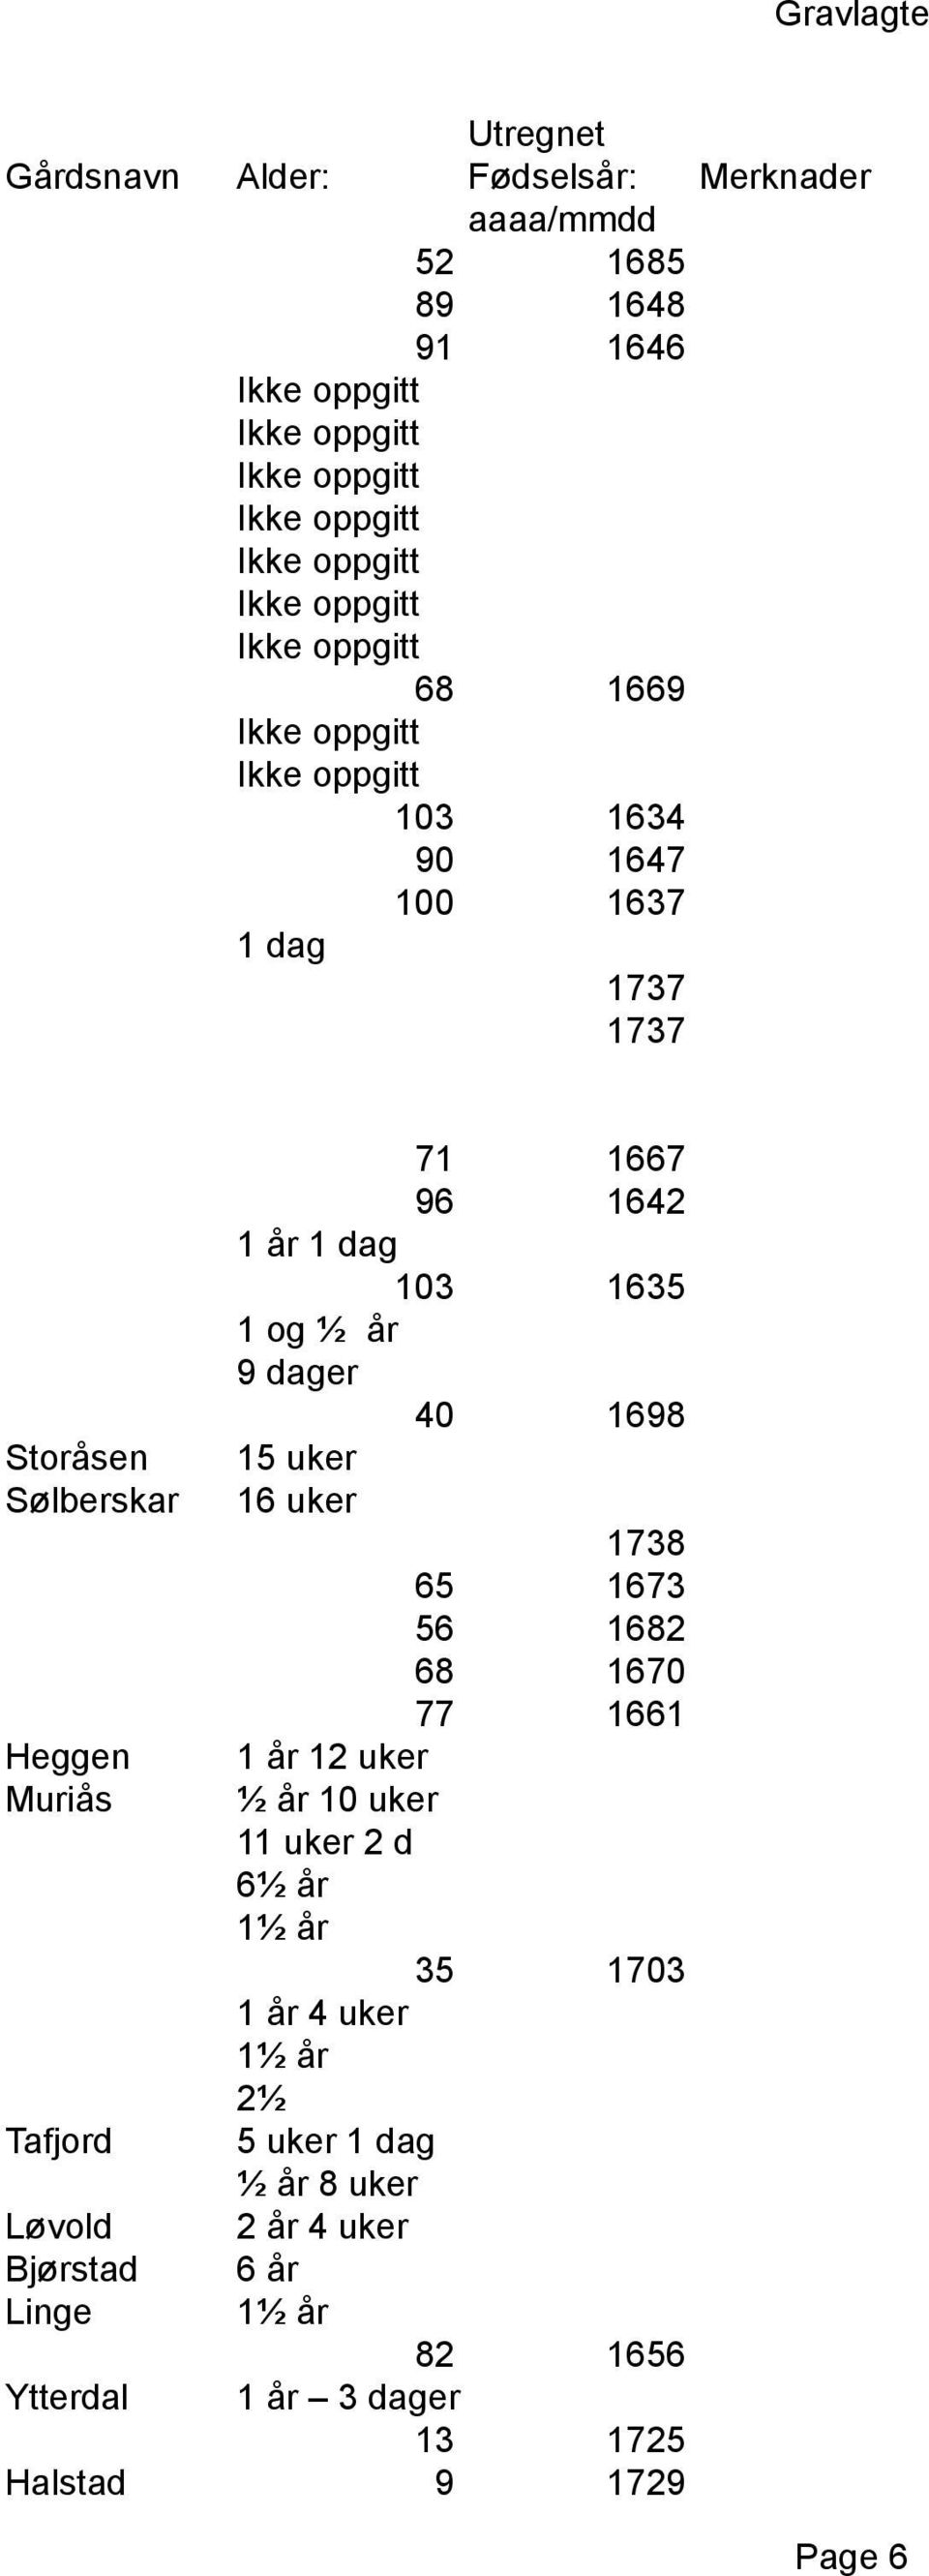 1682 68 1670 77 1661 Heggen 1 år 12 uker Muriås ½ år 10 uker 11 uker 2 d 6½ år 1½ år 35 1703 1 år 4 uker 1½ år 2½ Tafjord 5